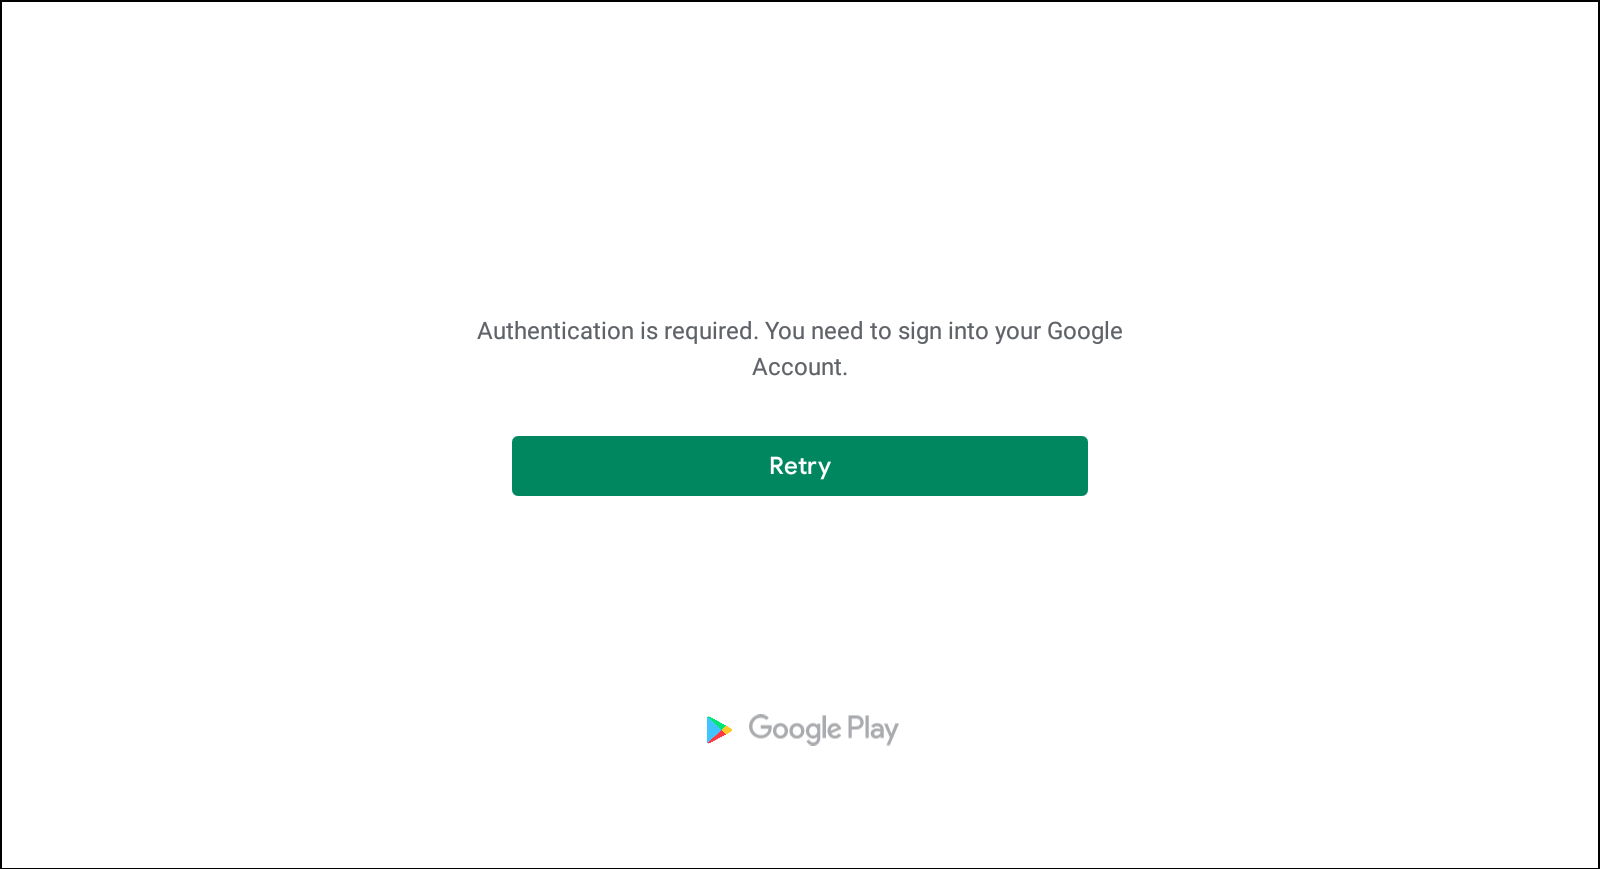 Resolver erros de instalação do aplicativo na Google Play Store